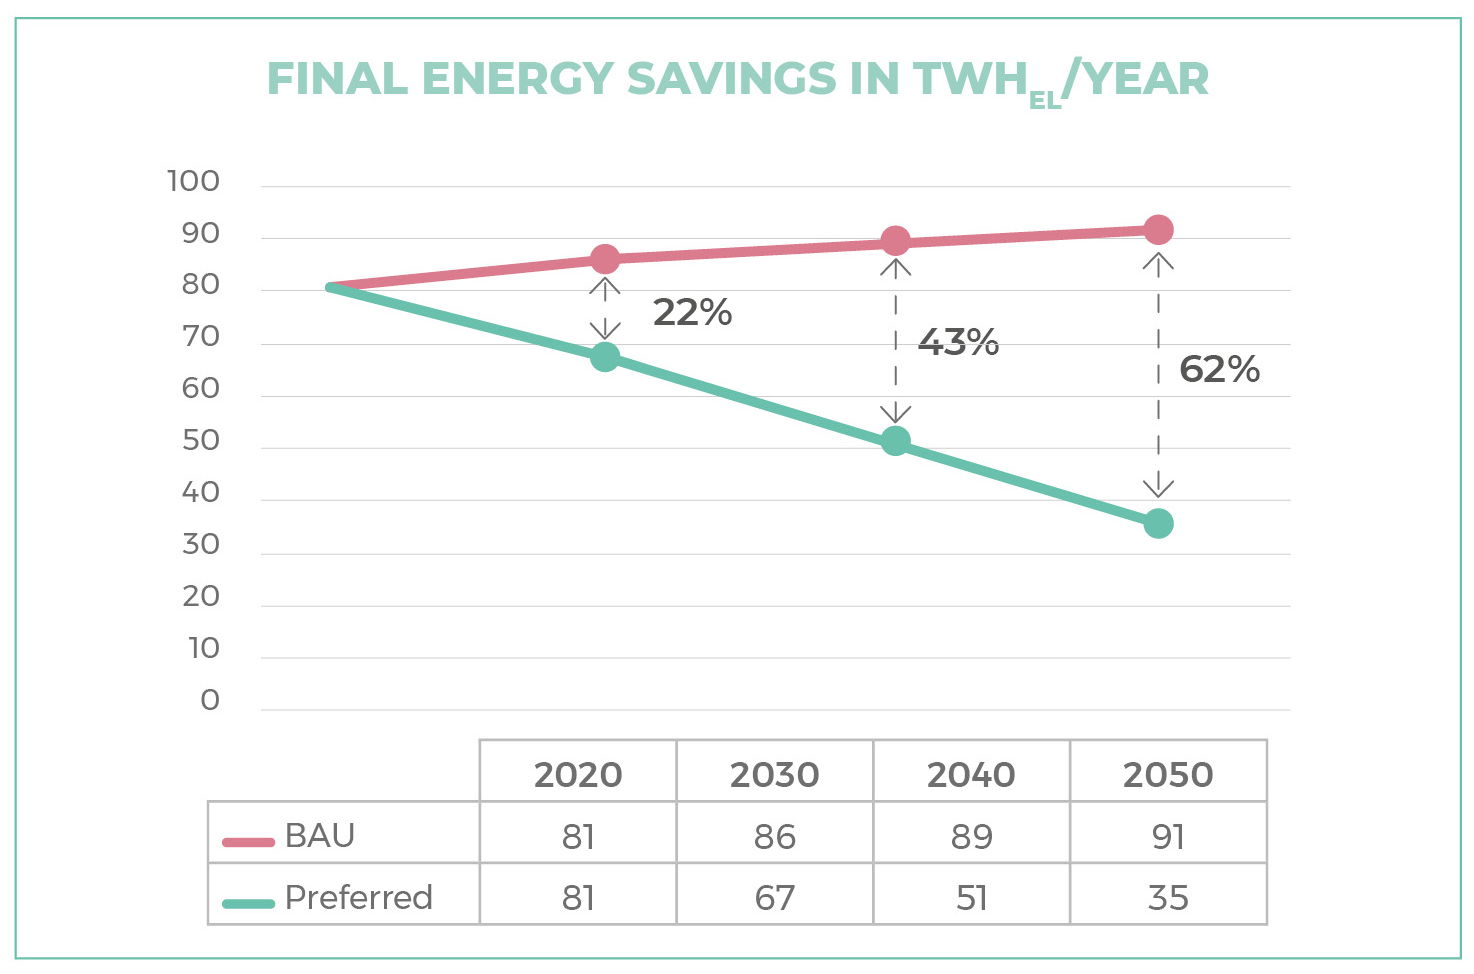 Risparmio energetico finale del 62% entro il 2050 usando schermature solari automatizzate in tutti gli edifici che richiedono raffreddamento (scenario preferito) (1)